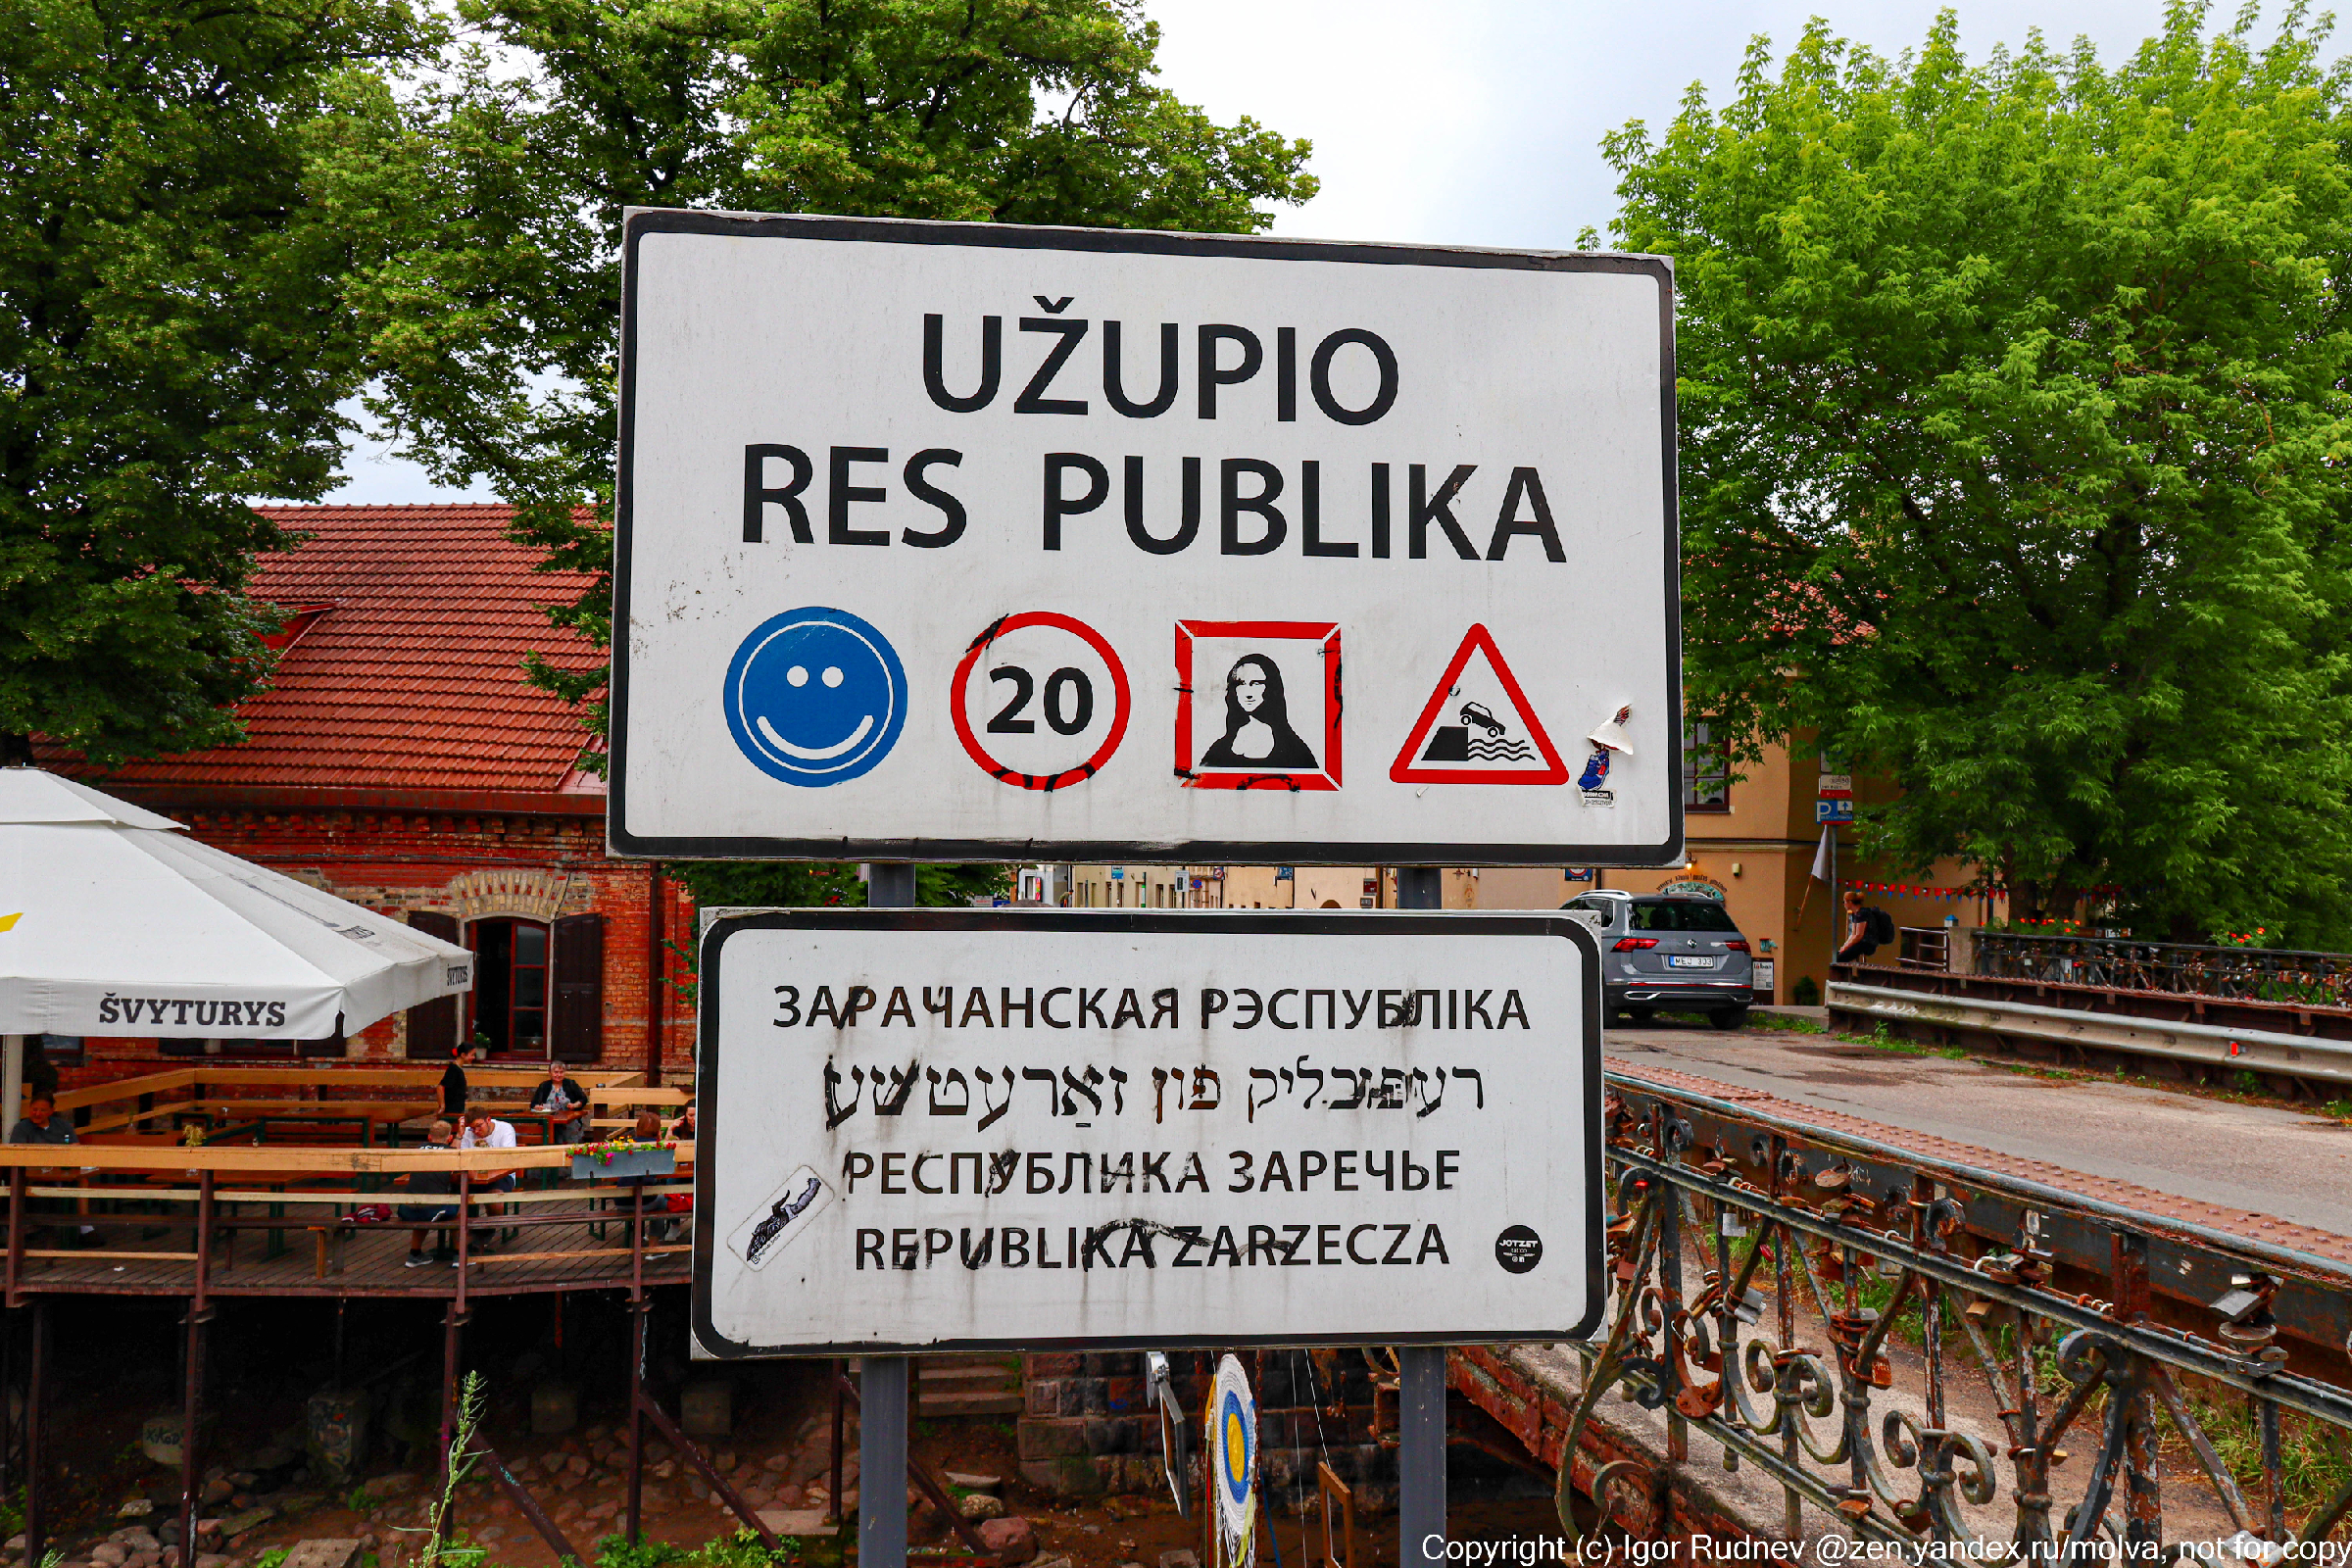 "Литовский сепаратизм" — как живут люди в непризнанной республике Ужупис, которая находится в Литве